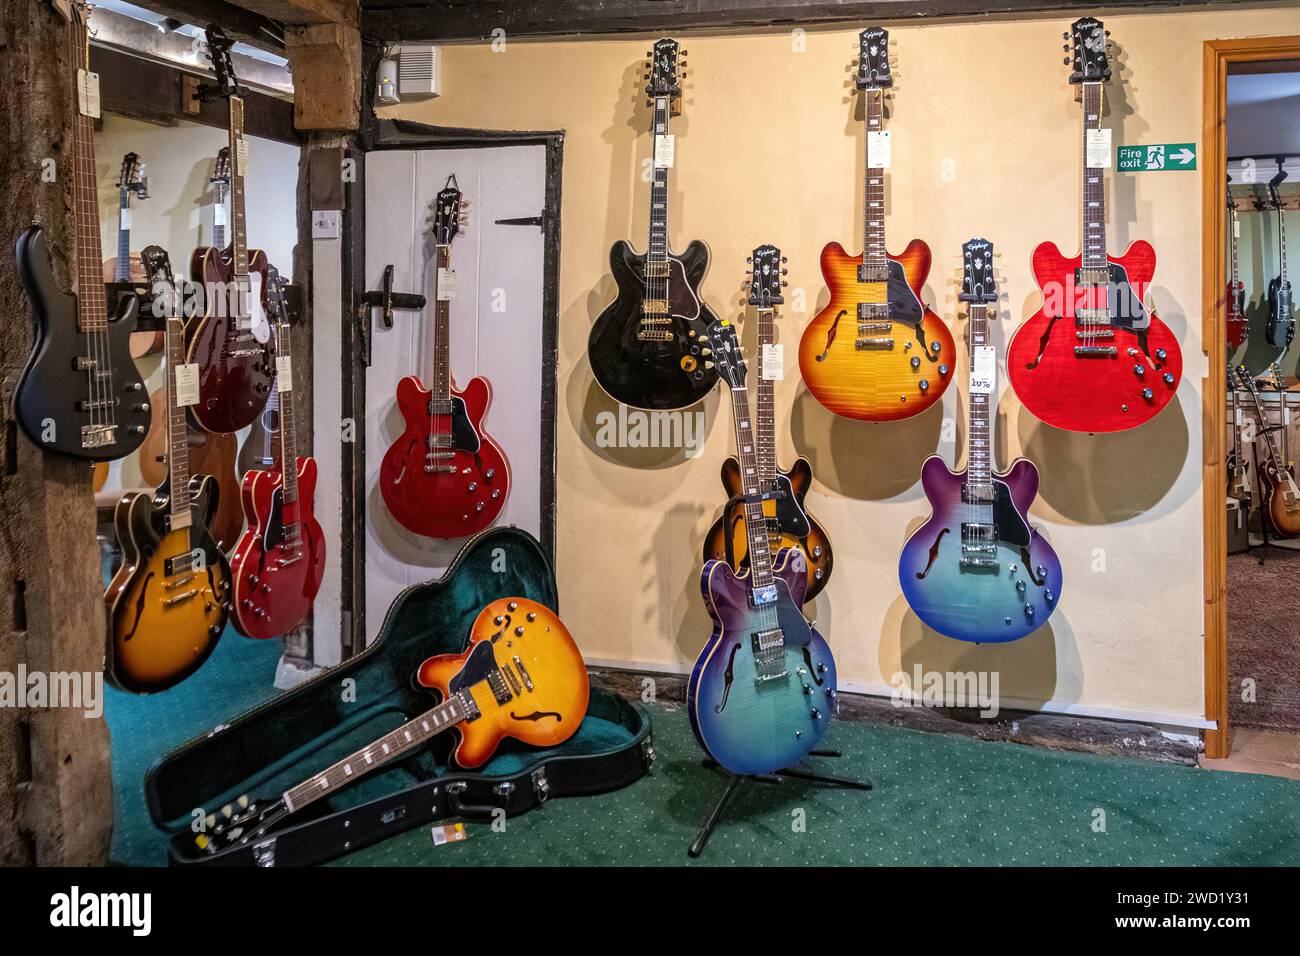 Negozio specializzato in Guitar Village che vende chitarre a Farnham, Surrey, Inghilterra, Regno Unito. Chitarre in mostra all'interno del negozio di musica. Foto Stock